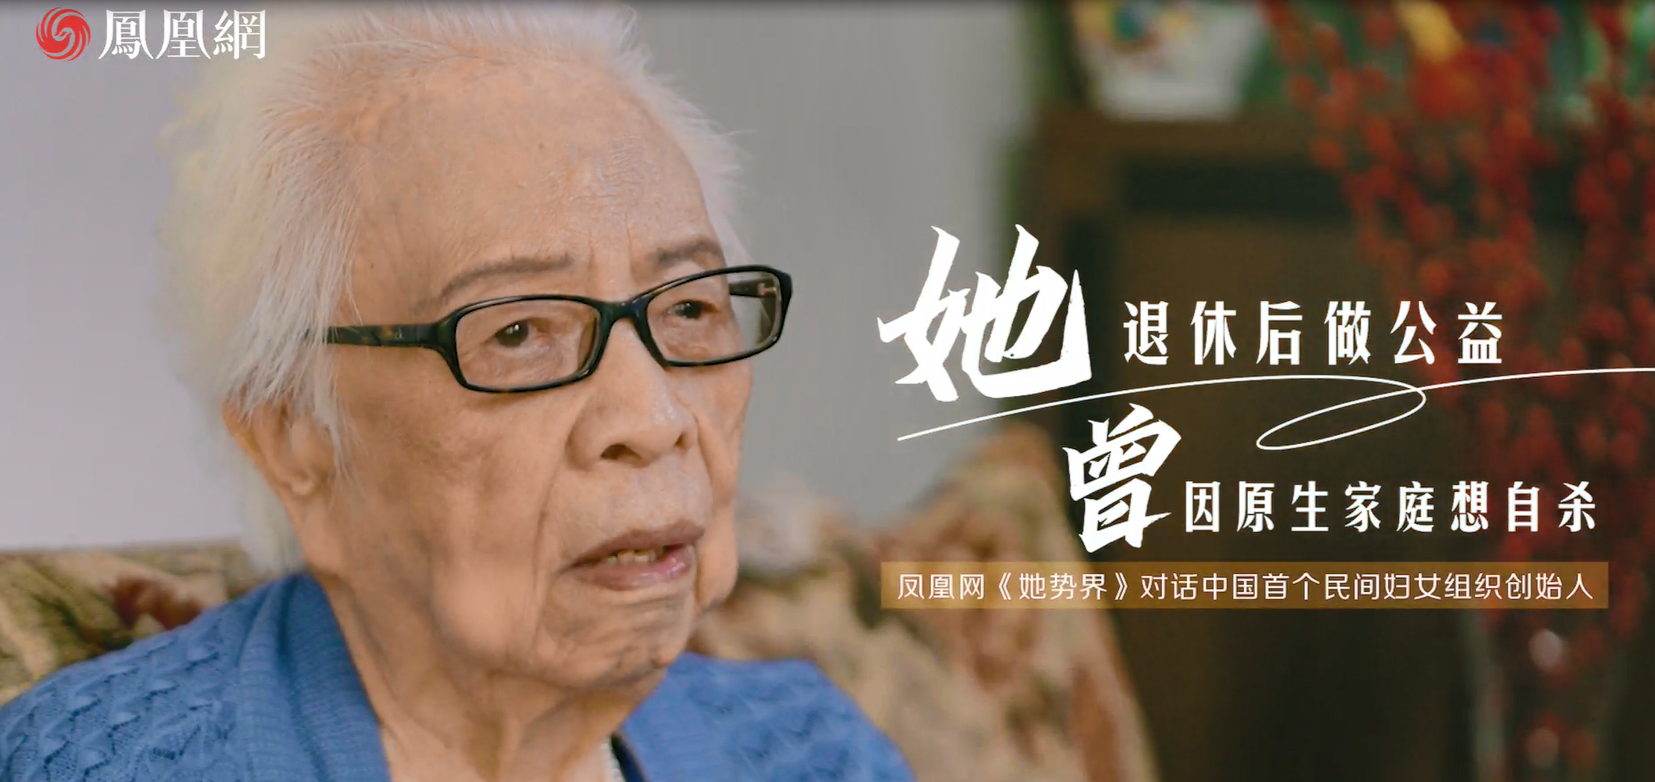 她退休后做公益，曾因原生家庭想自杀|凤凰网《她势界》对话中国首个民间妇女组织创始人王行娟